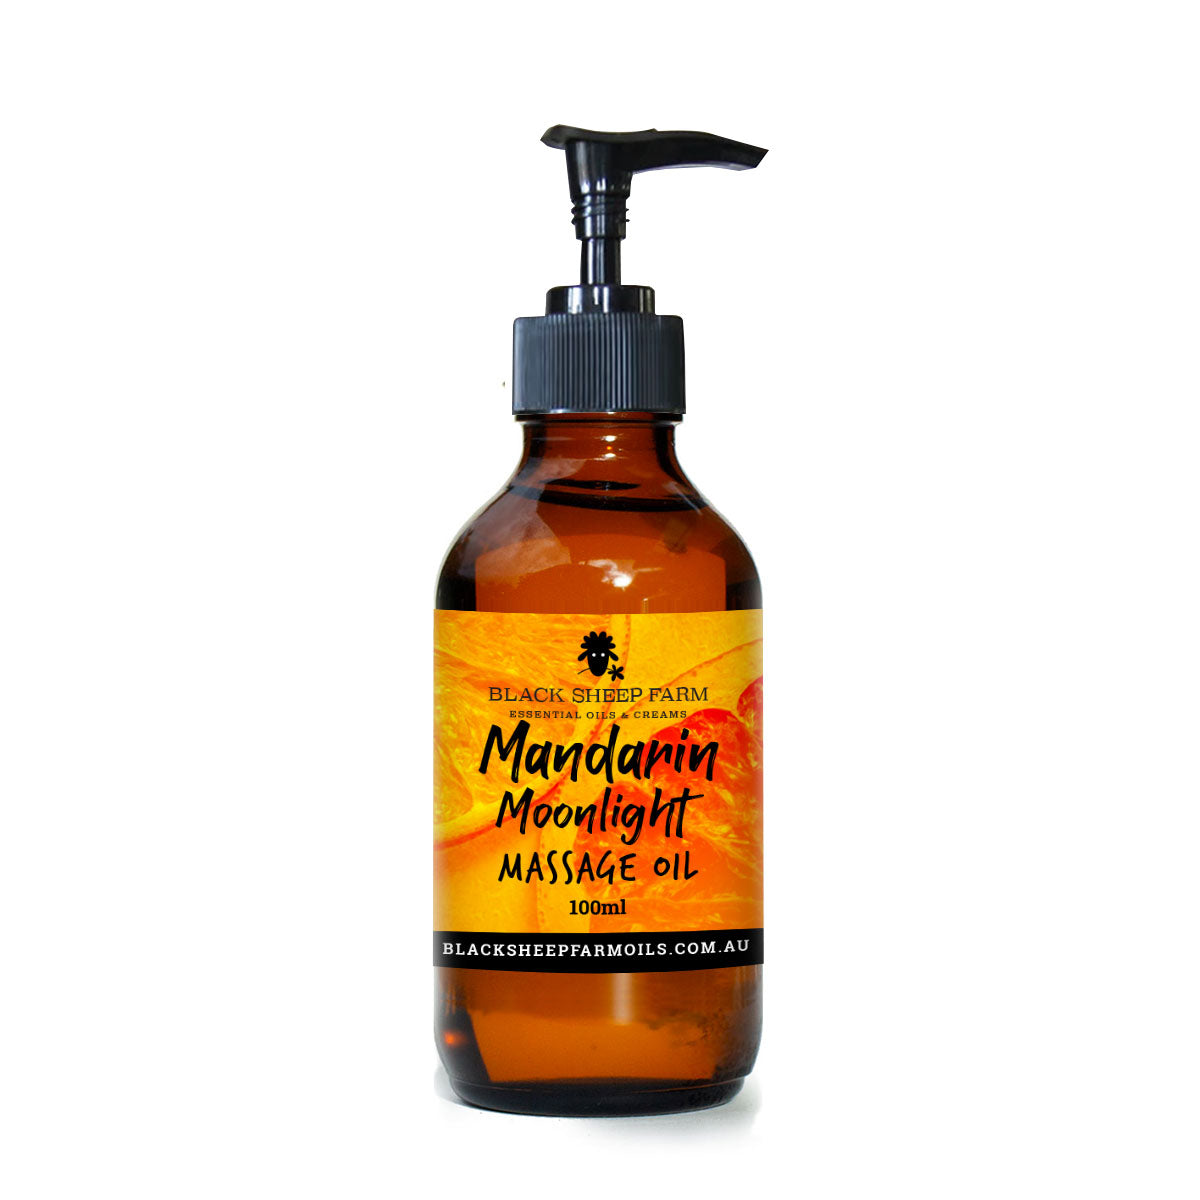 Mandarin Moonlight Massage Oil